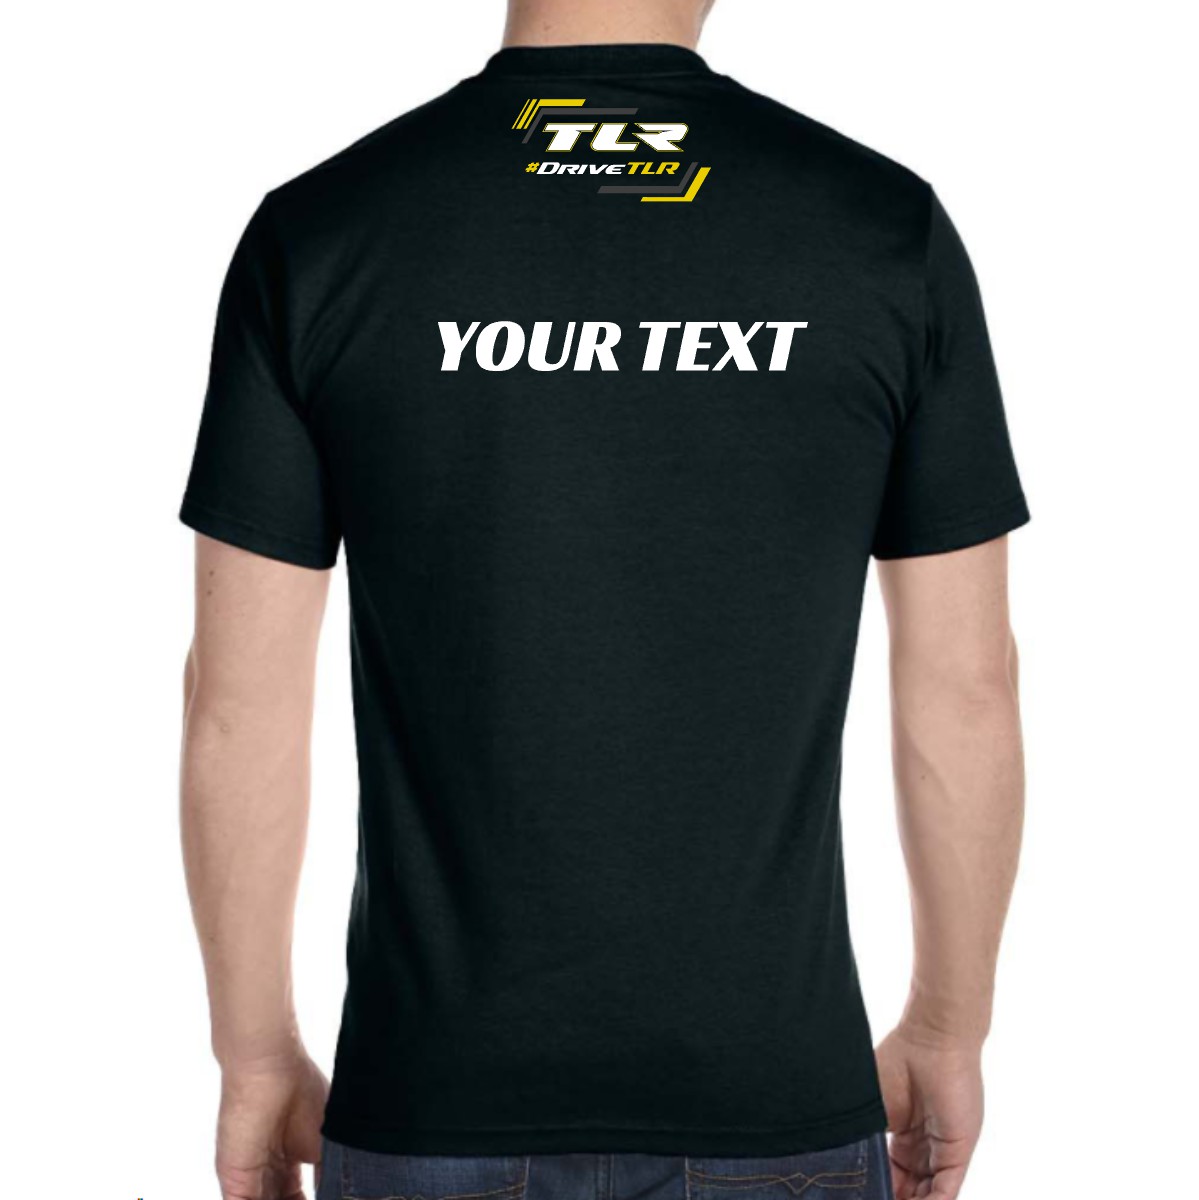 *NSYNC Multi Color Logo T-Shirt 2XL / Smoke